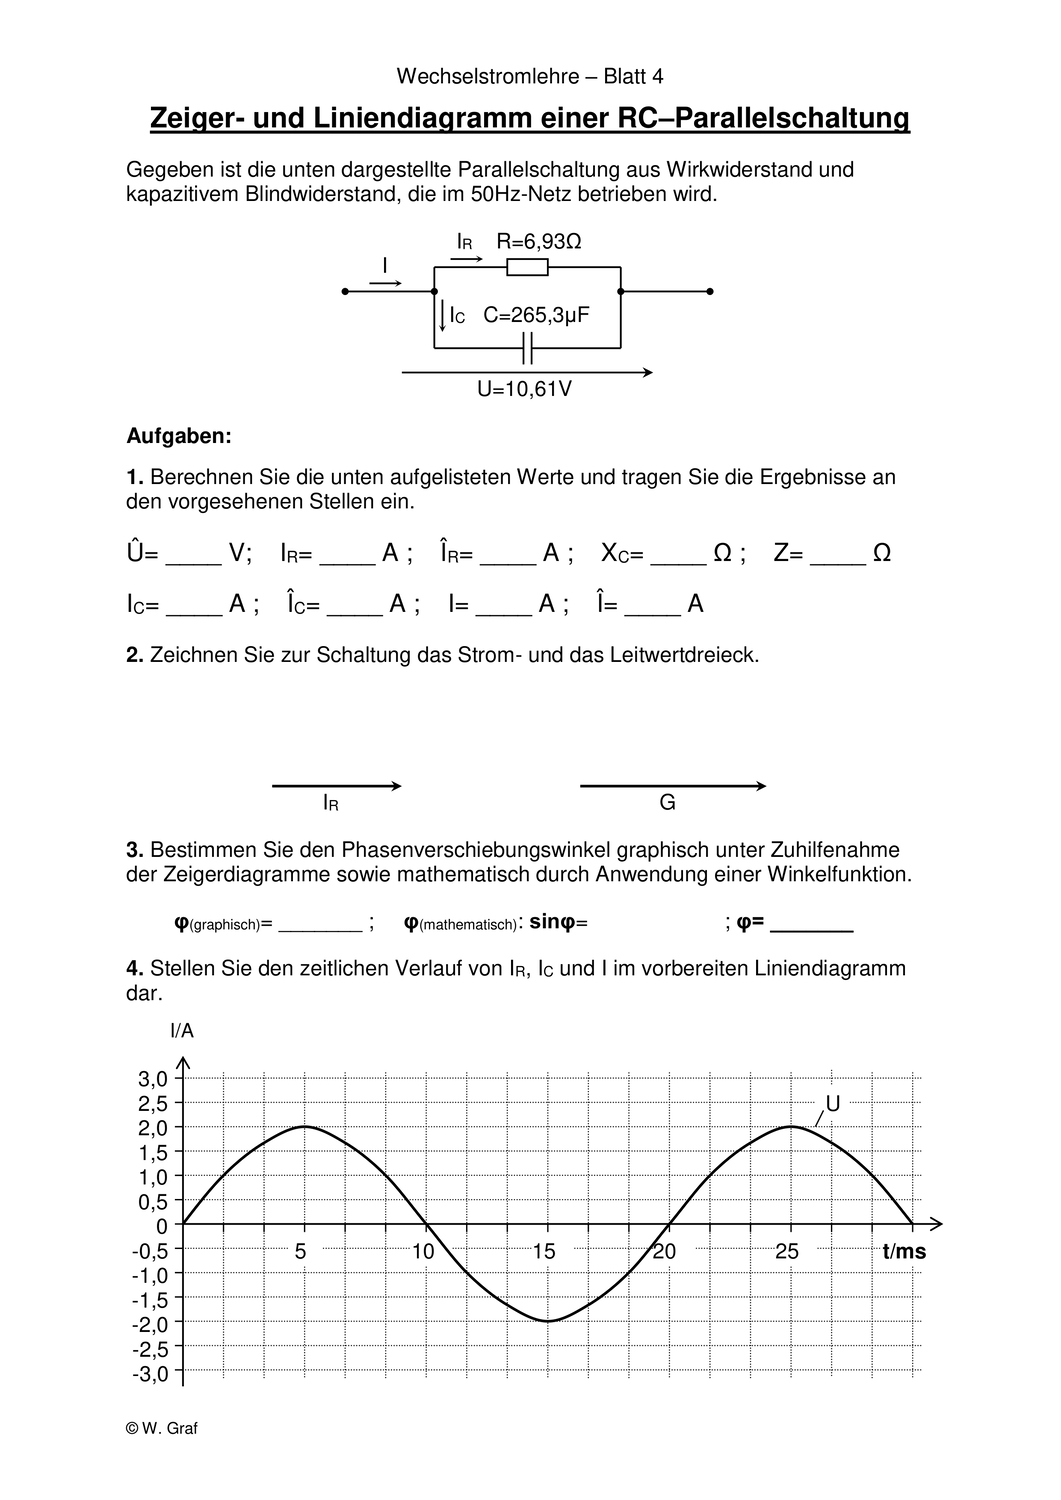 Beispiel Einer Rc Parallelschaltung Berechnungen Und Diagramme Unterrichtsmaterial In Den Fachern Physik Technik Technik Bs Liniendiagramm Diagramm Technik